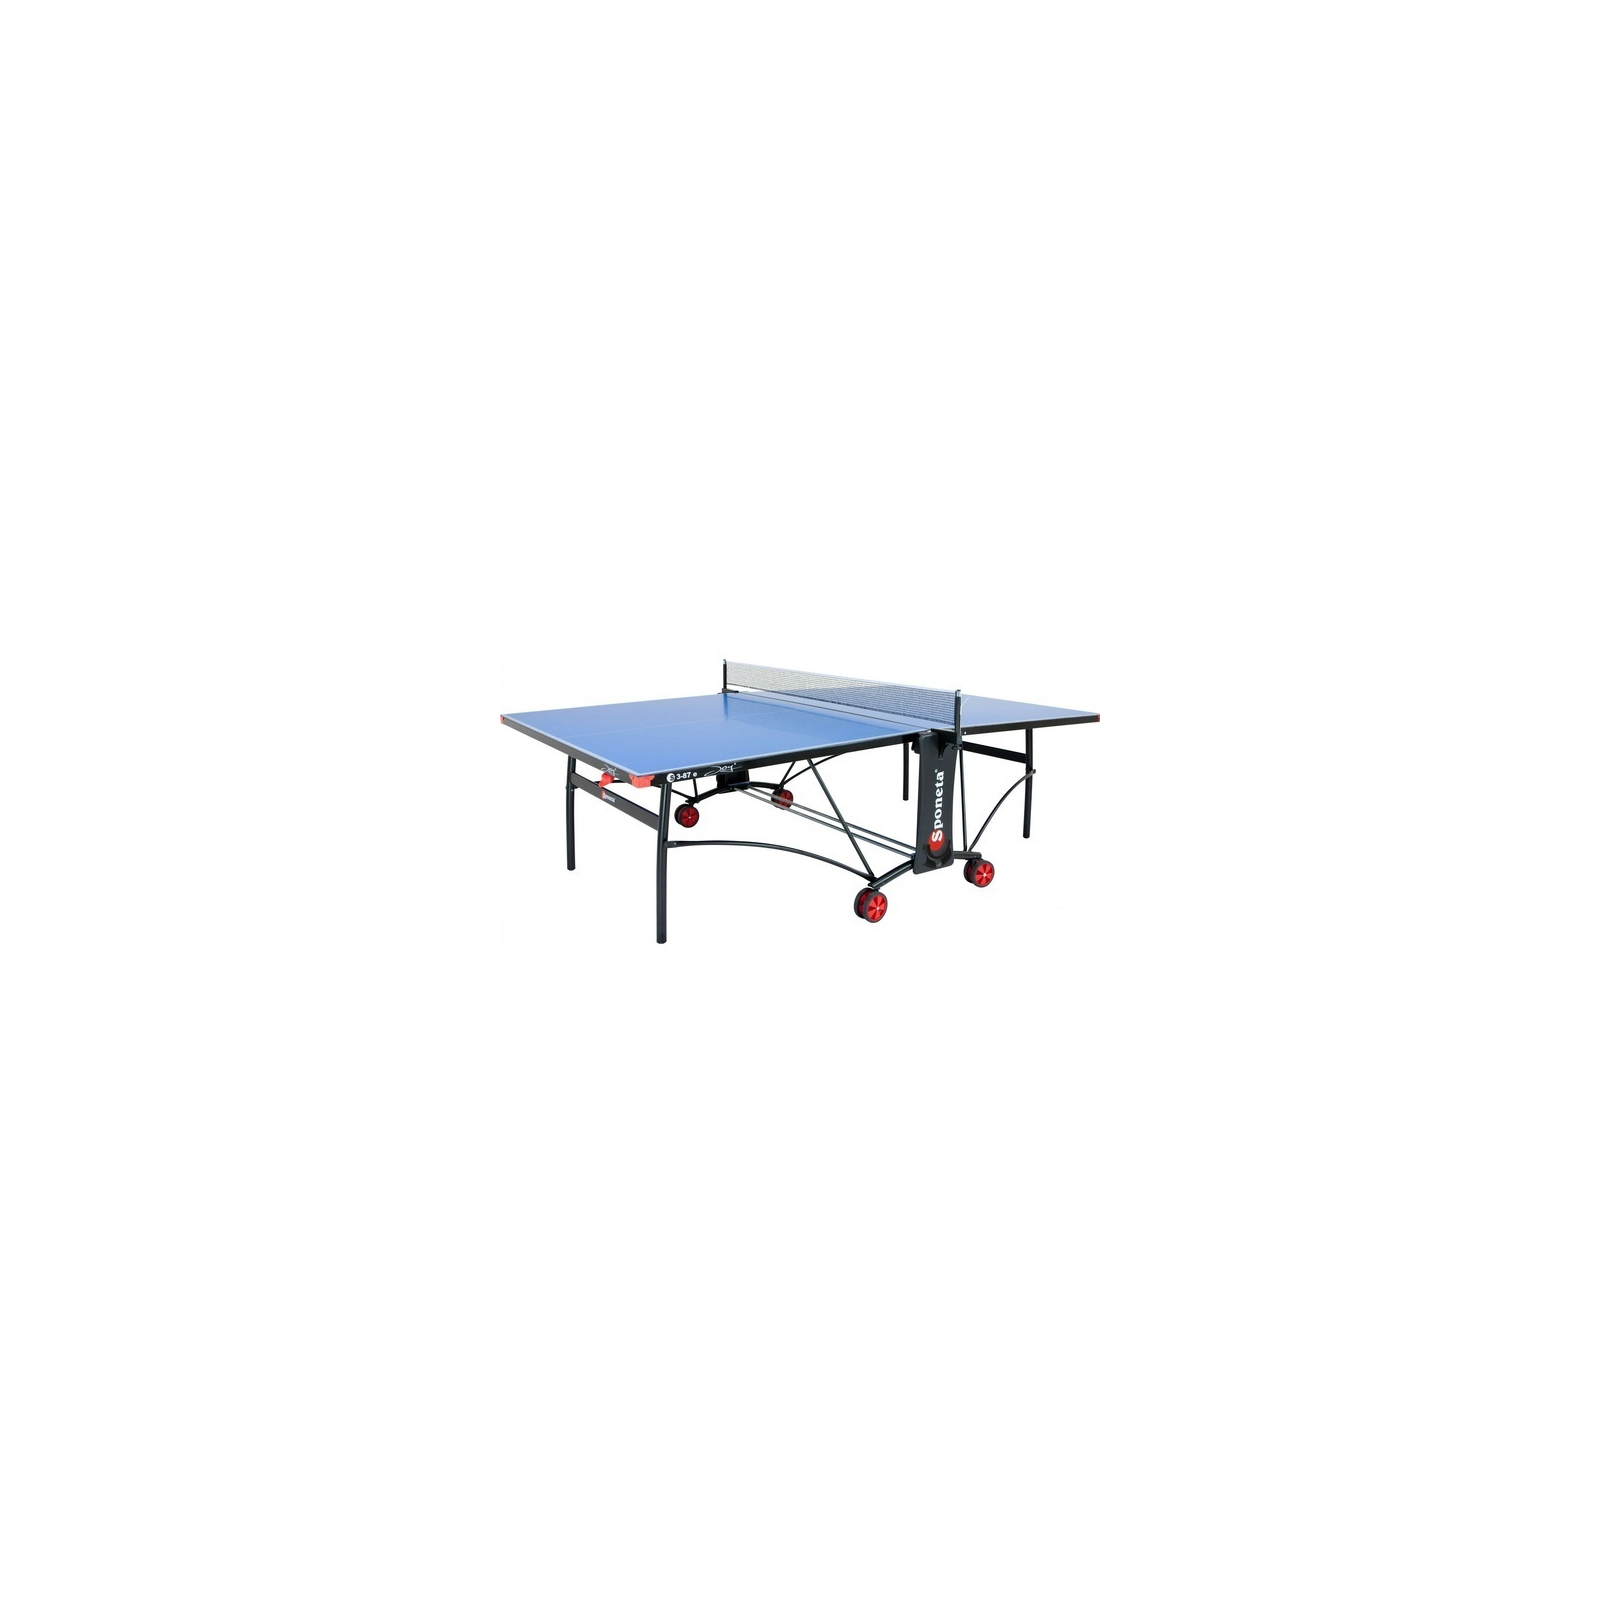 Теннисный стол Sponeta S3-87е изображение 2